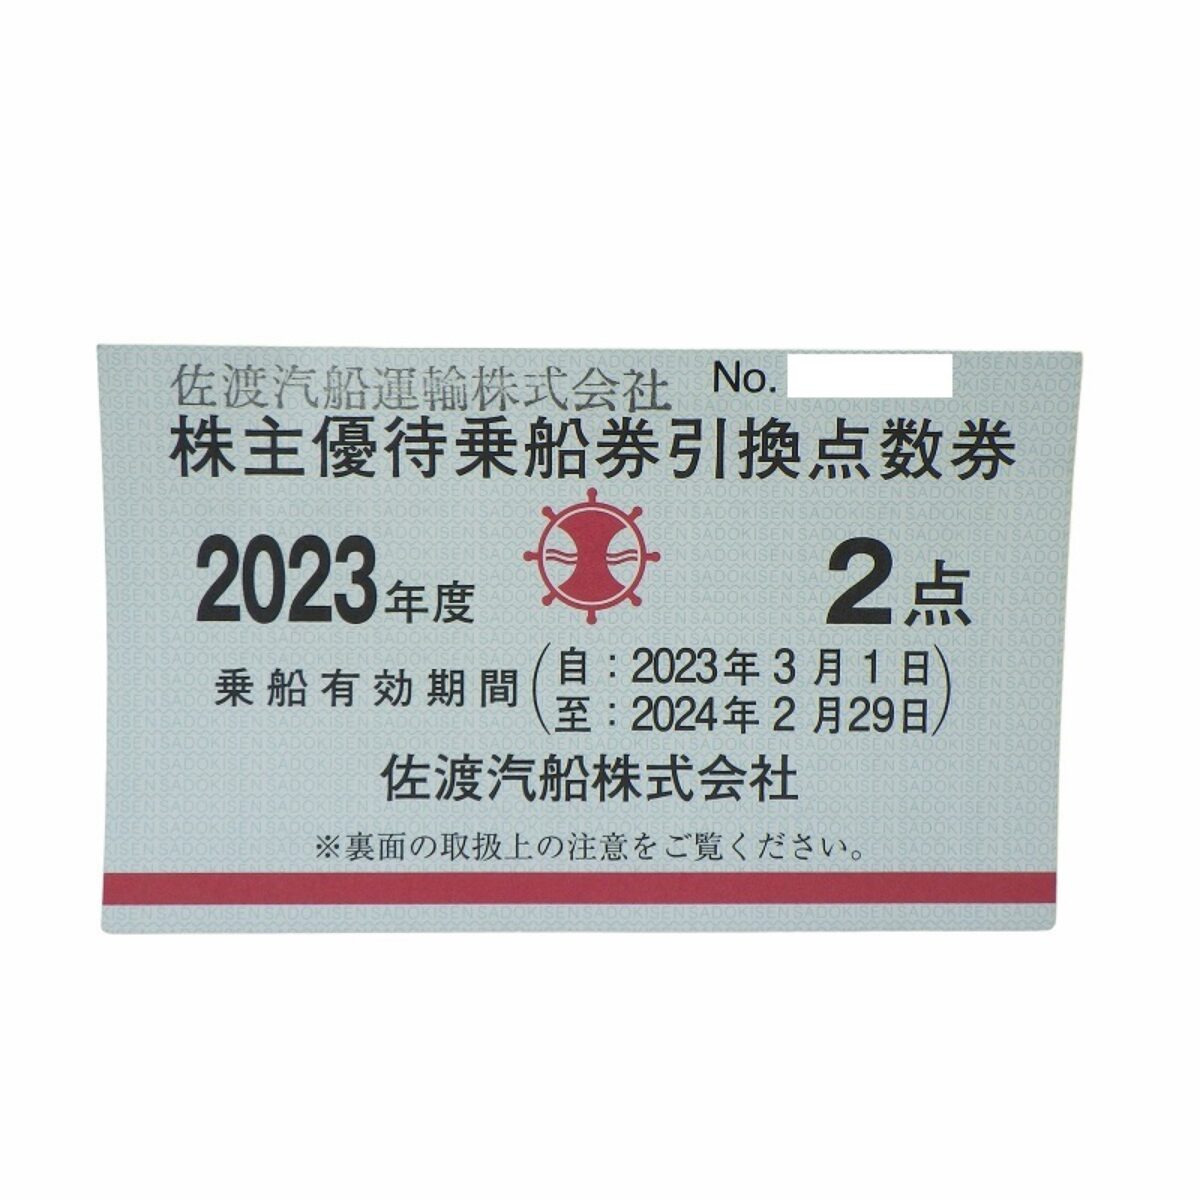 佐渡汽船 株主優待乗船券引換点数券 2023年度 2点の買取価格をお答えし